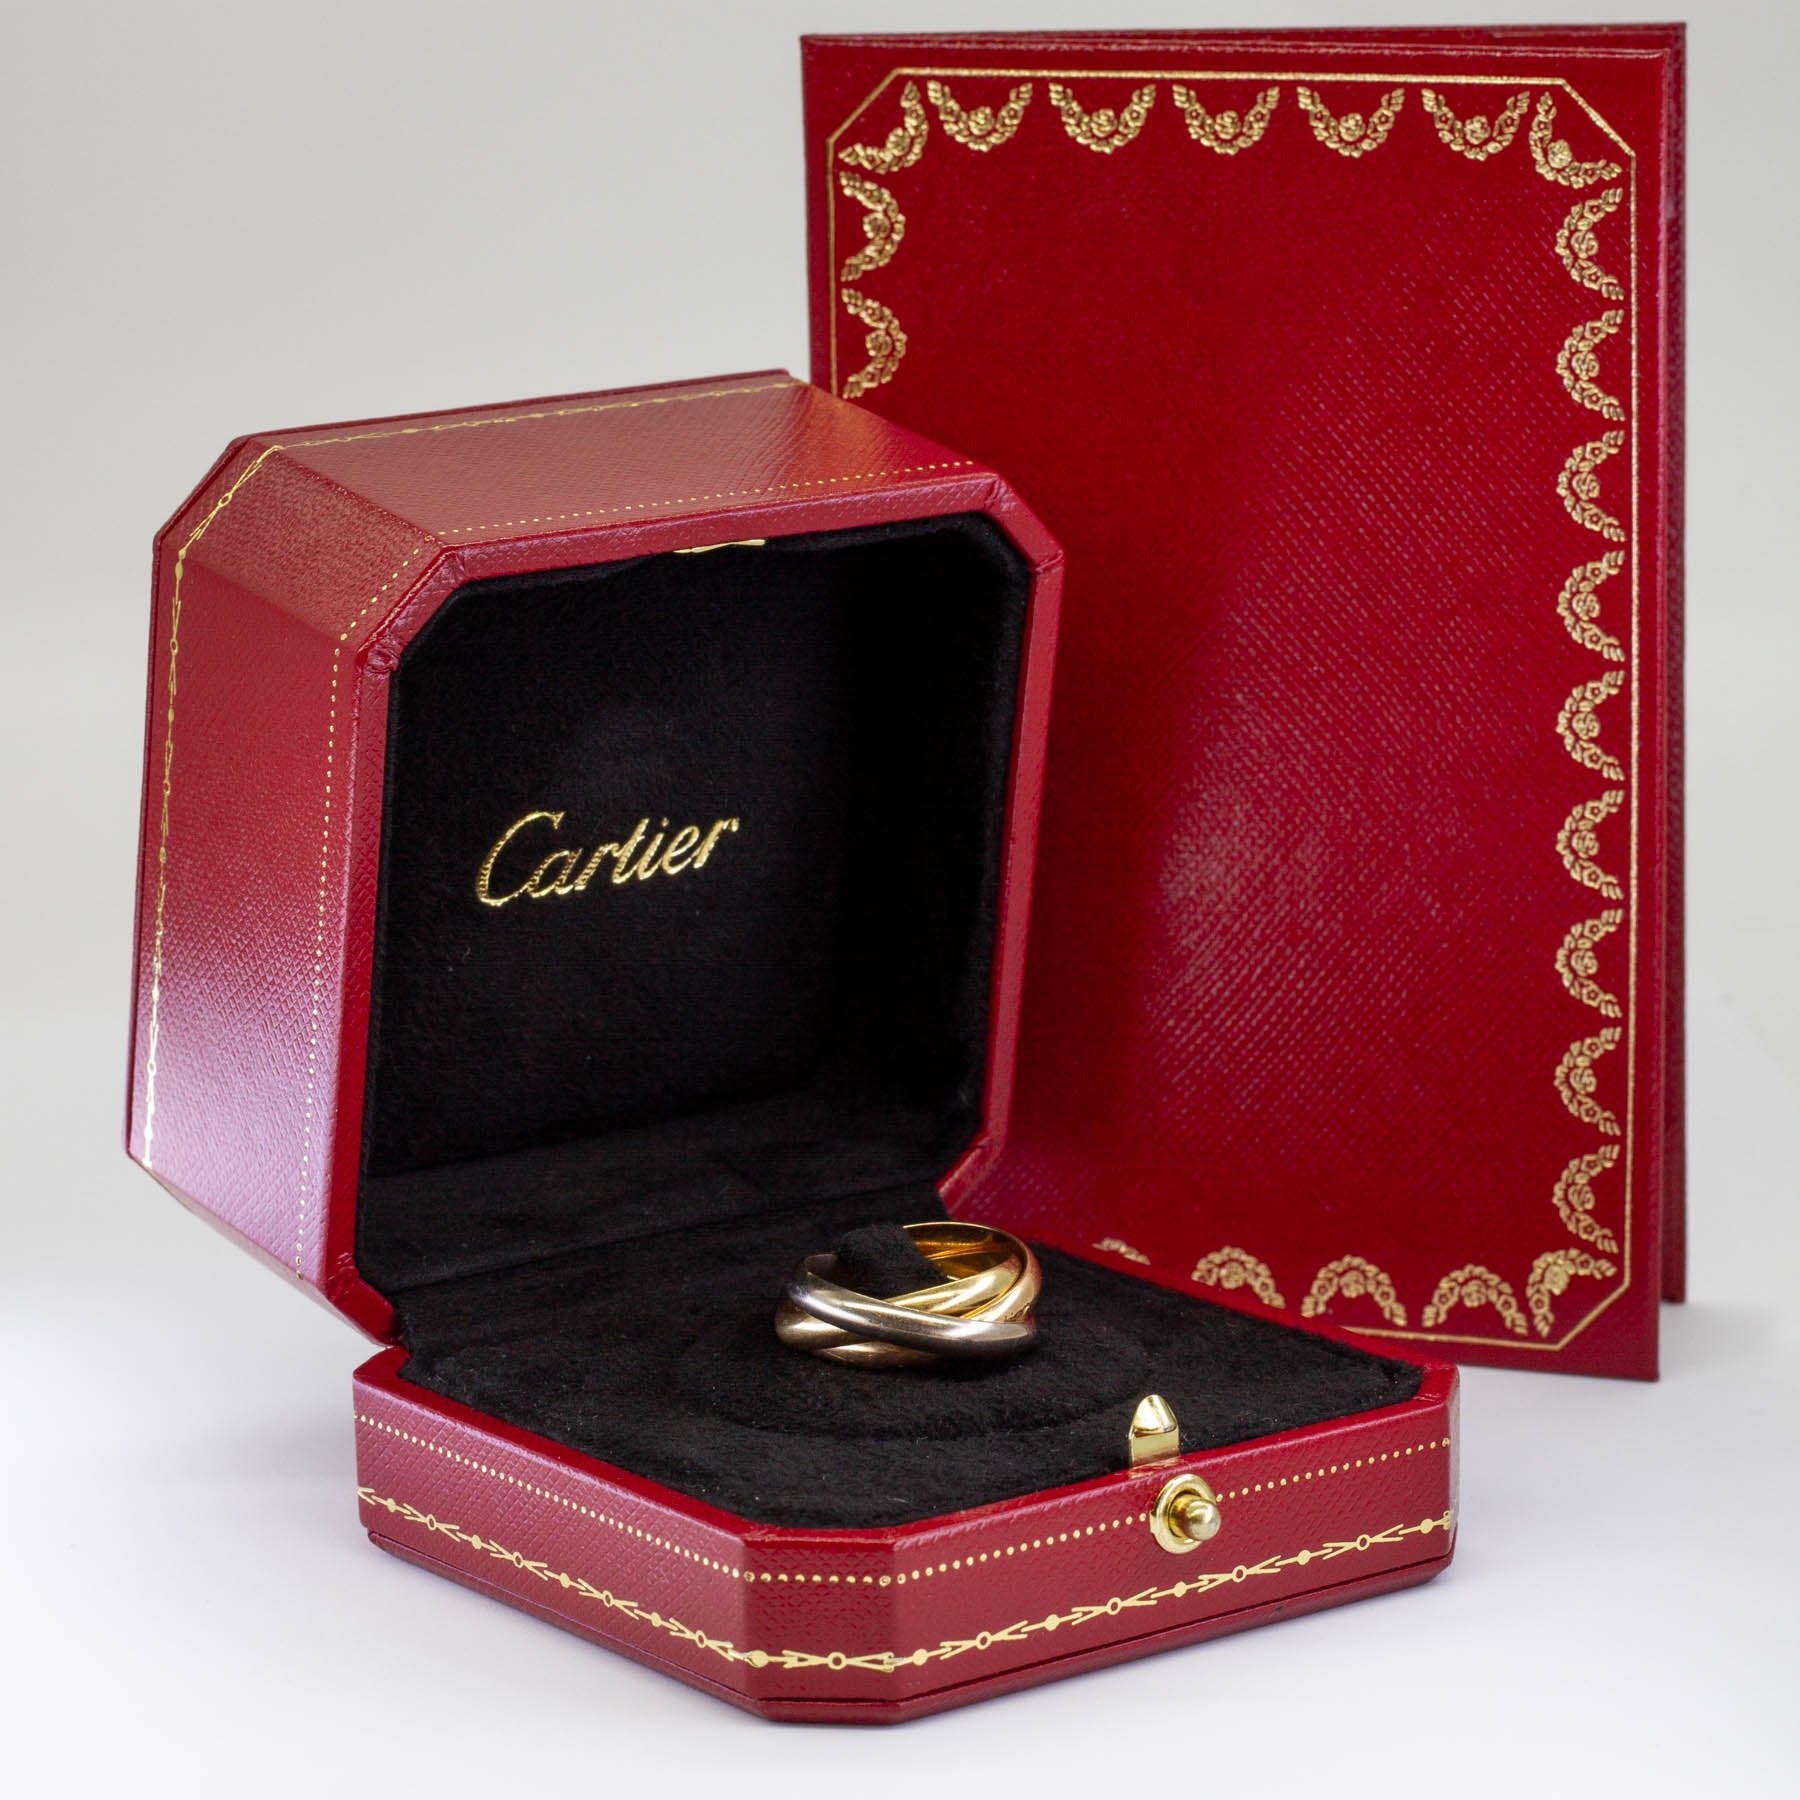 'Cartier' Classic Trinty Ring | Sz 8 | Cartier Sz 55 - 100 Ways